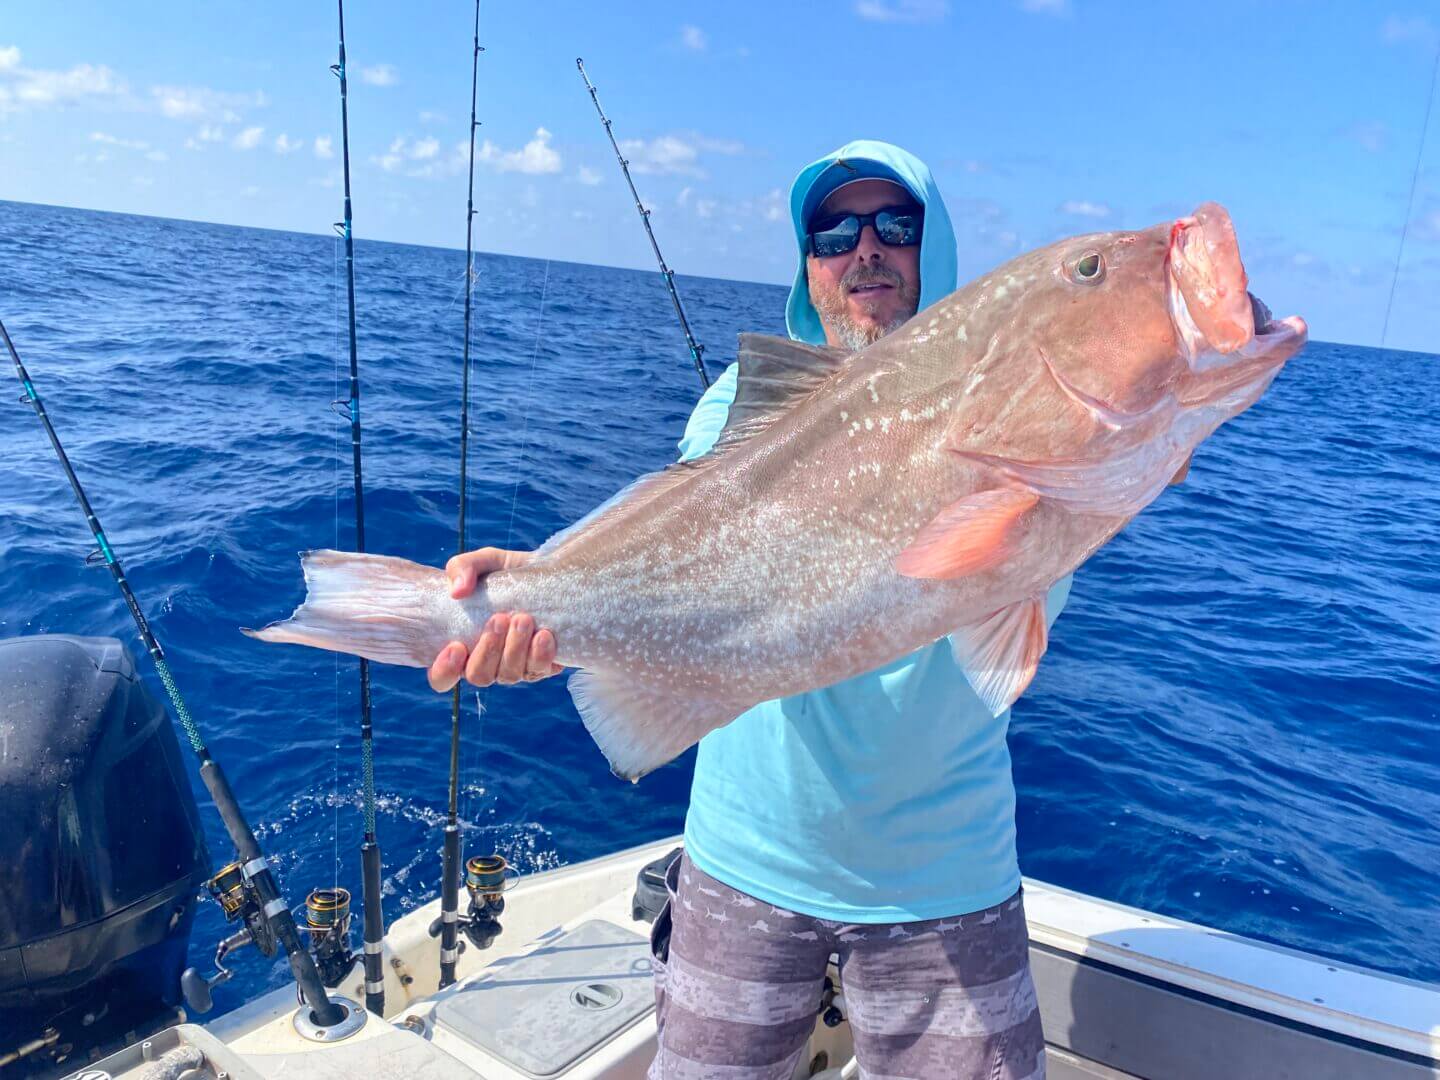 Fourreau Ultimate Fishing - Fish In Golfe, sac canne a peche